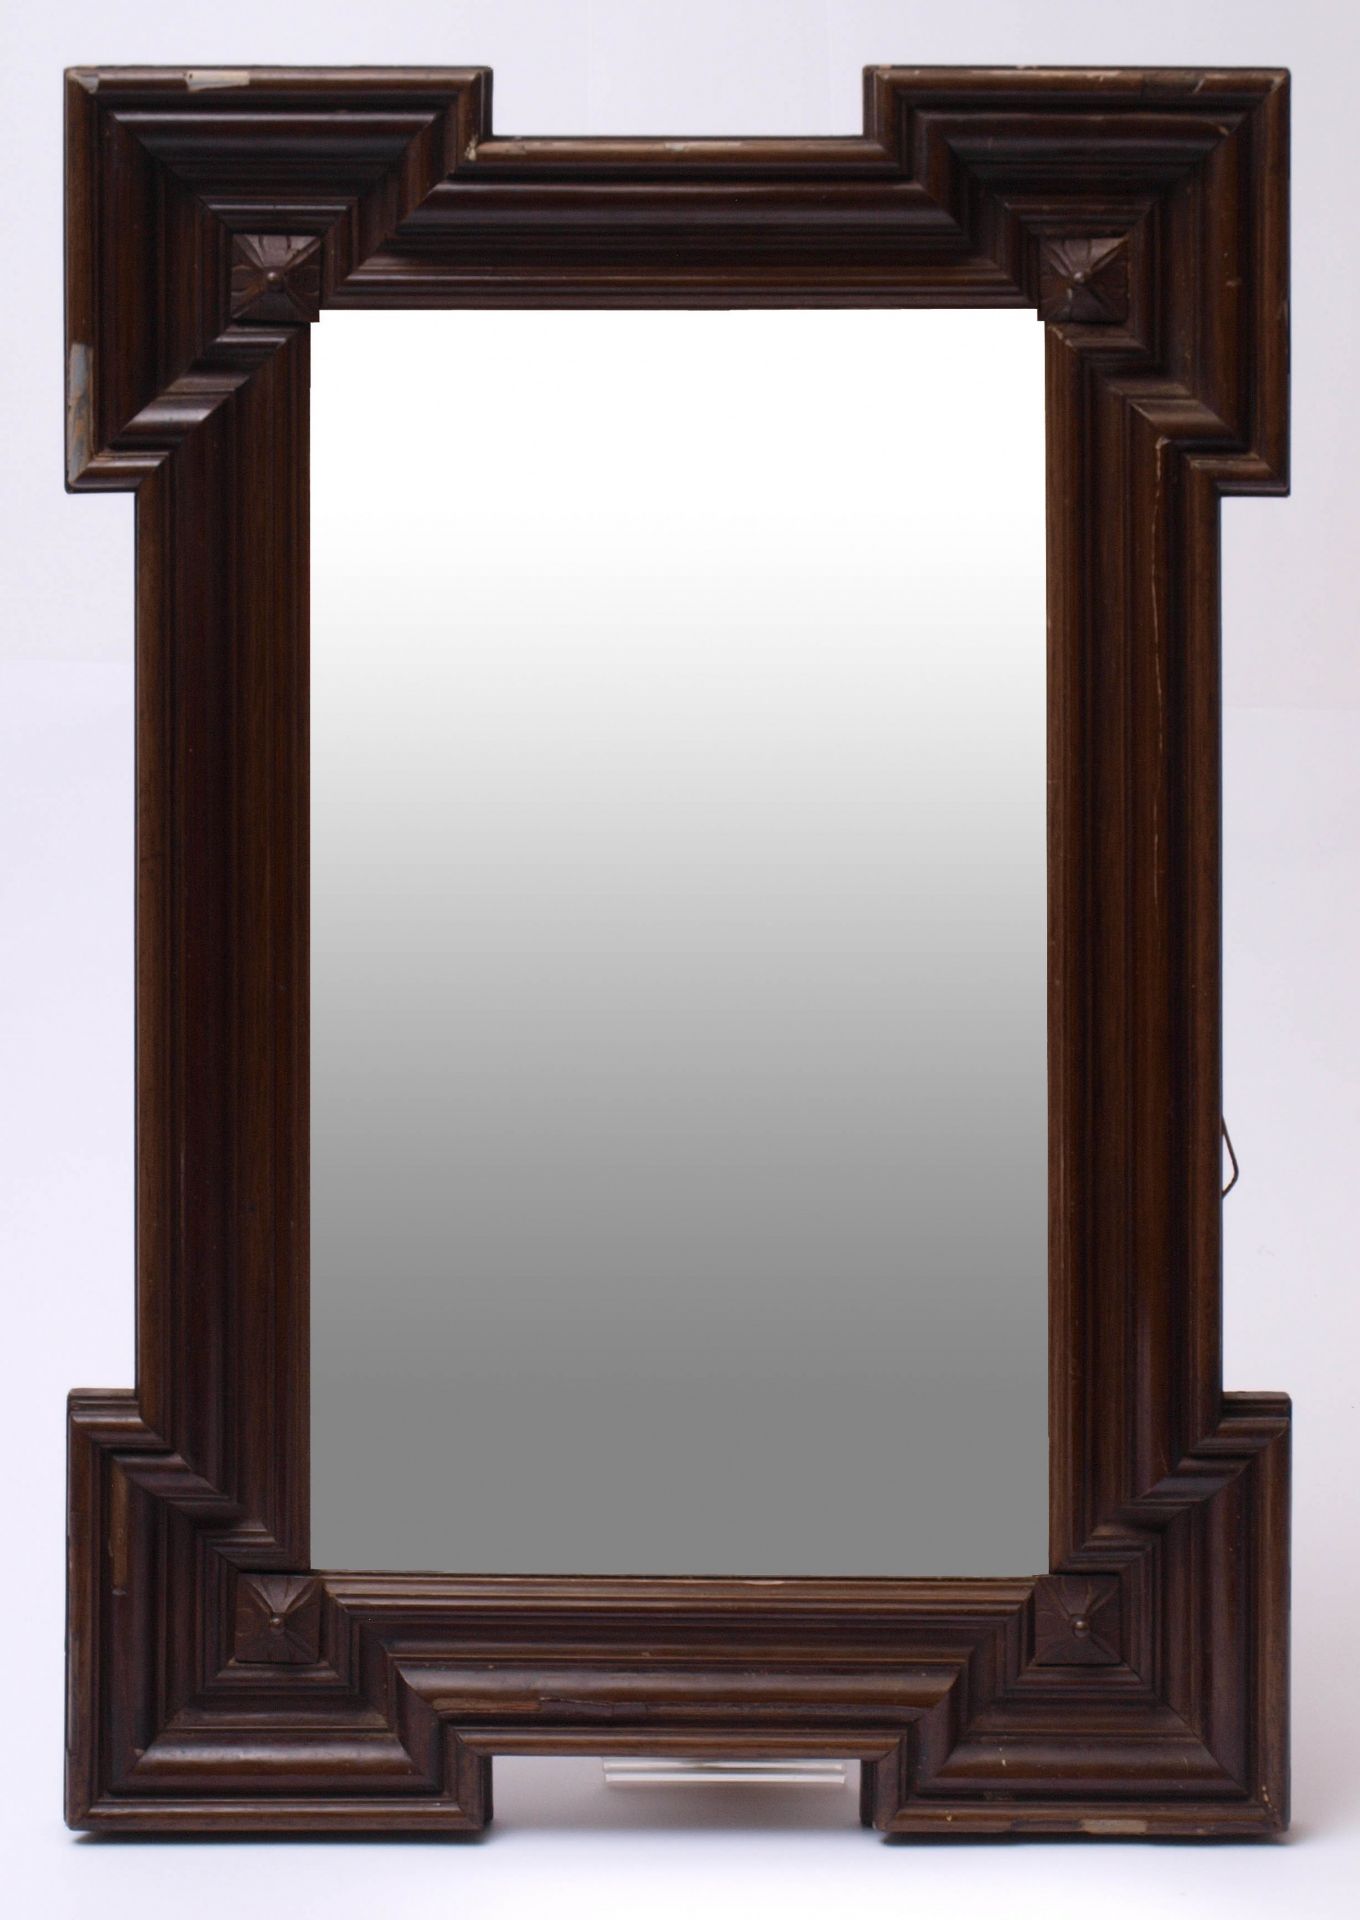 Spiegel, 2. Hälfte 19.Jhdt.Rechteckige Form mit facettiertem Spiegel. Profilierter Rahmen mit